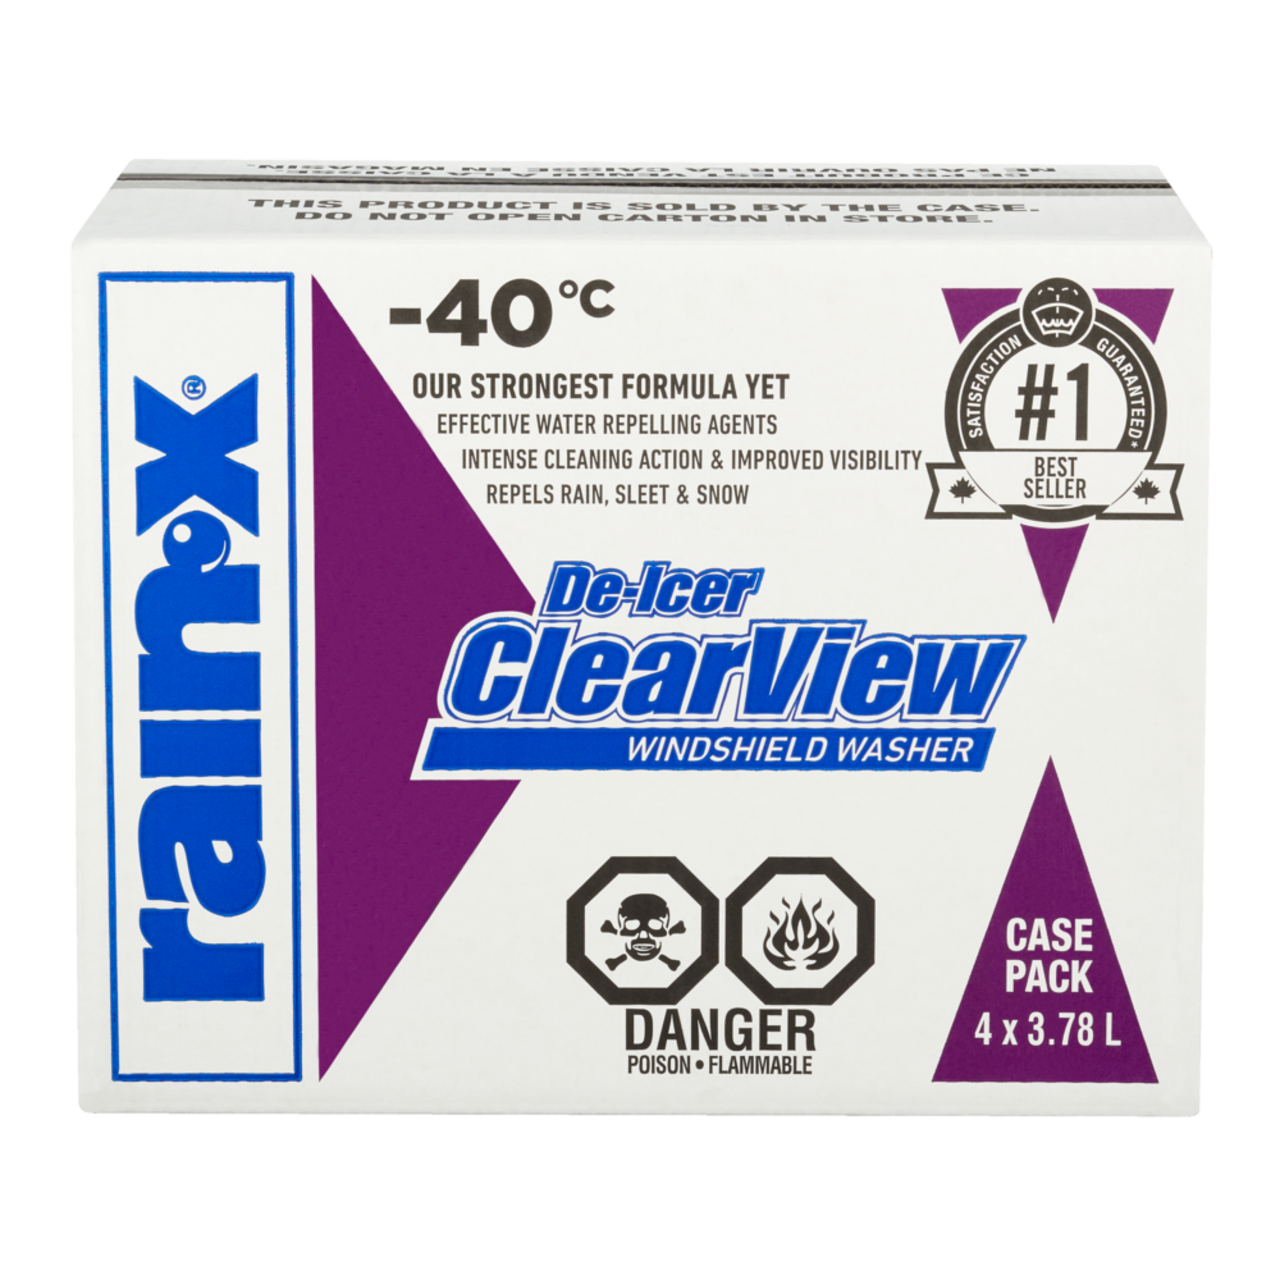 Rain-X RainX Repellent Glass Treatment Liquid Improves Windscreen  Visibility 506026668748 